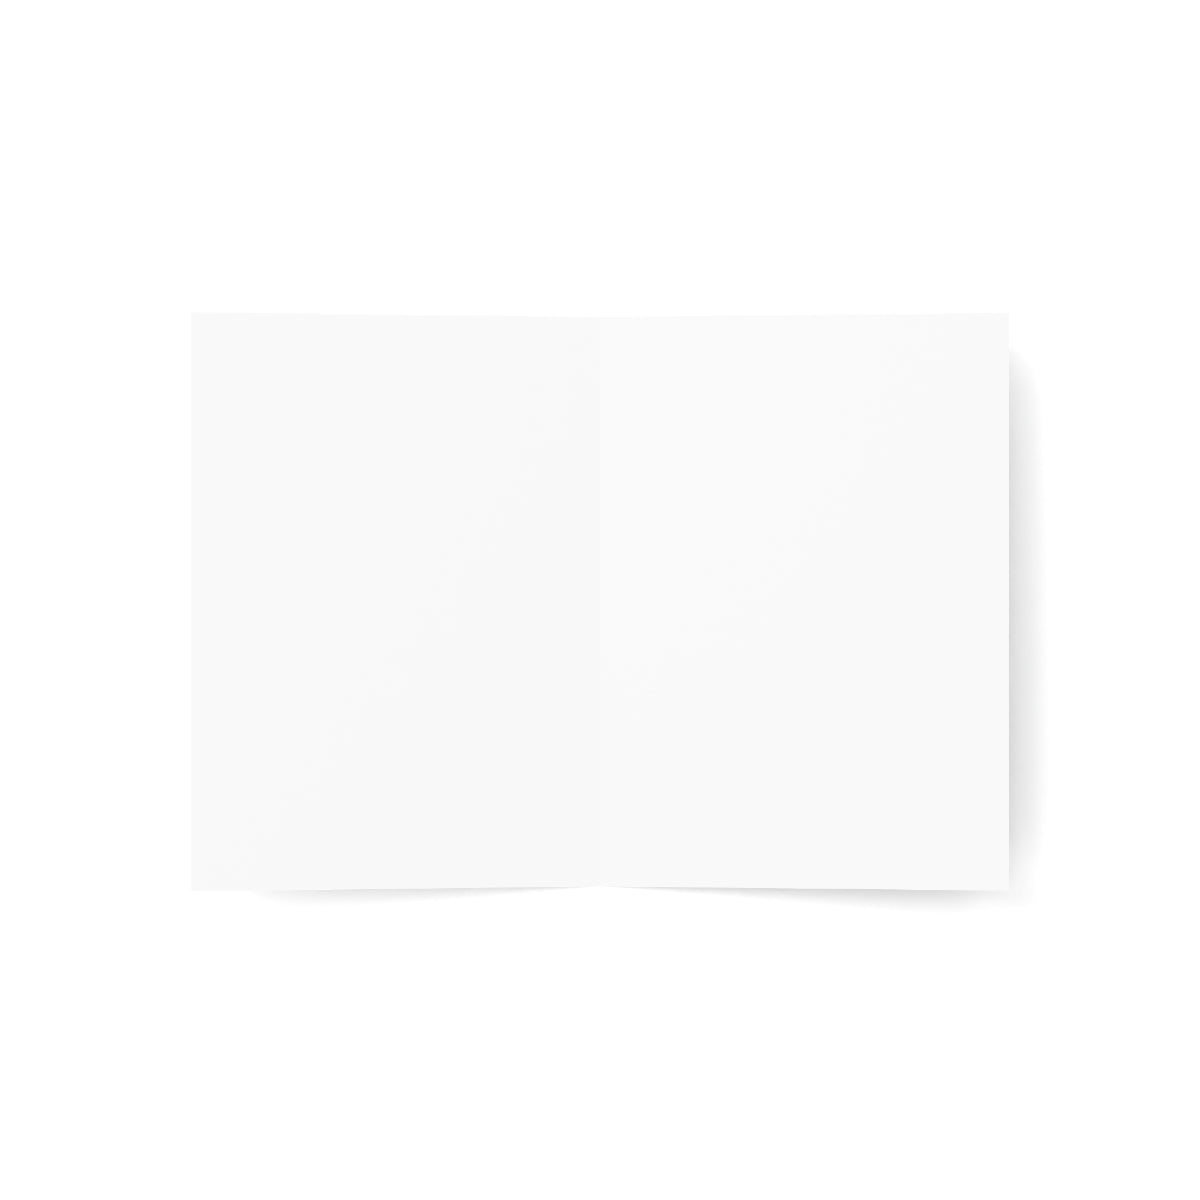 Route 66 Folded Matte Notecards + Envelopes (10pcs)